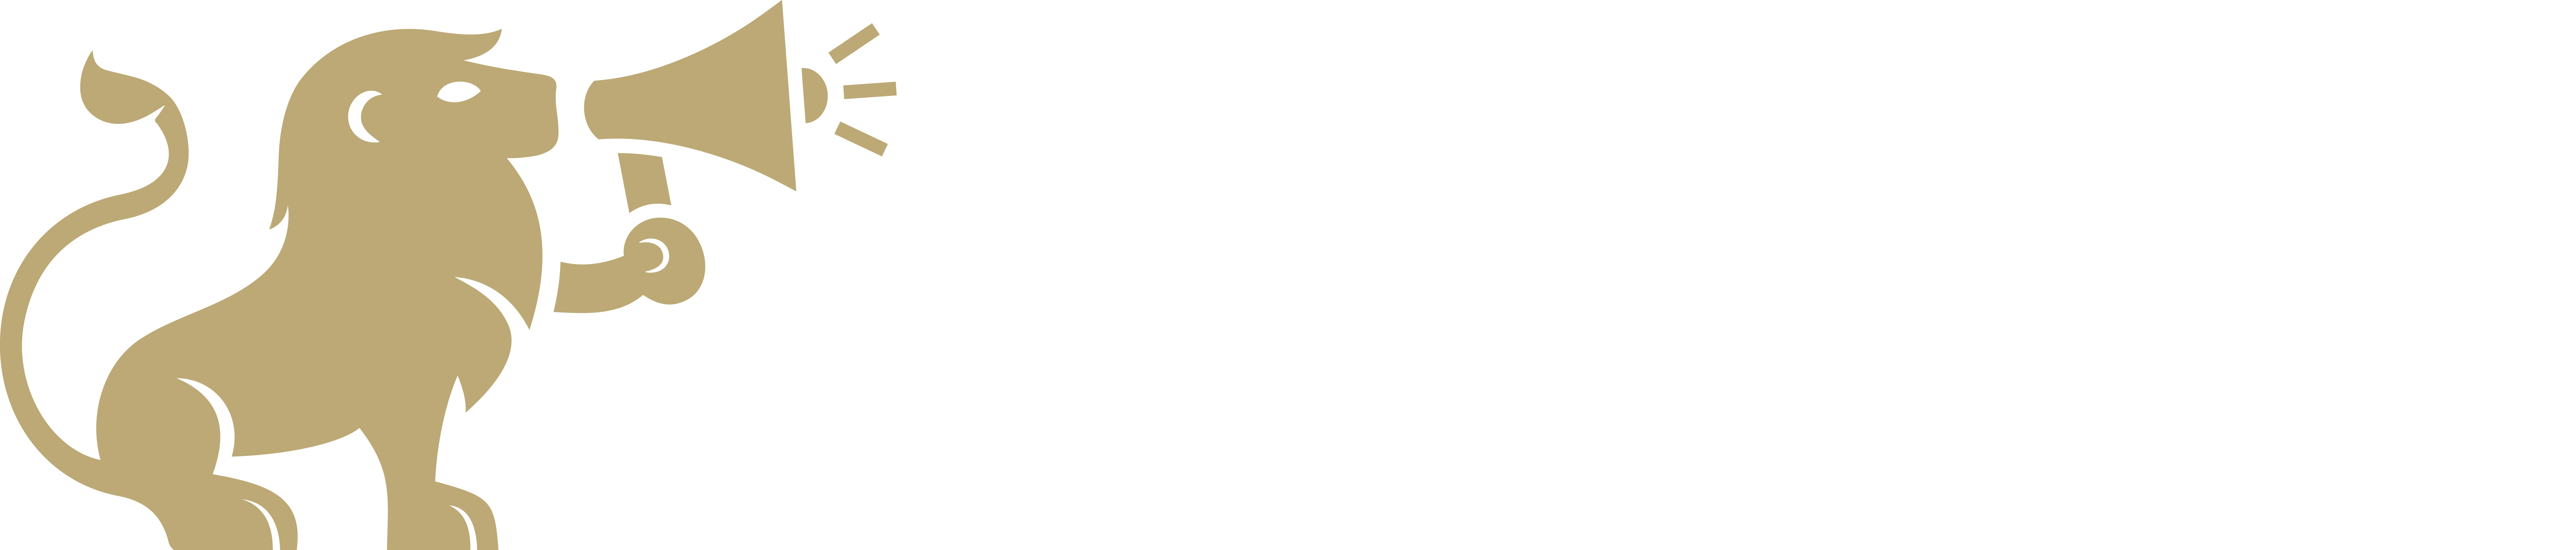 Logotipo Ana Ortiz Publicidad - Agencia de Zaragoza